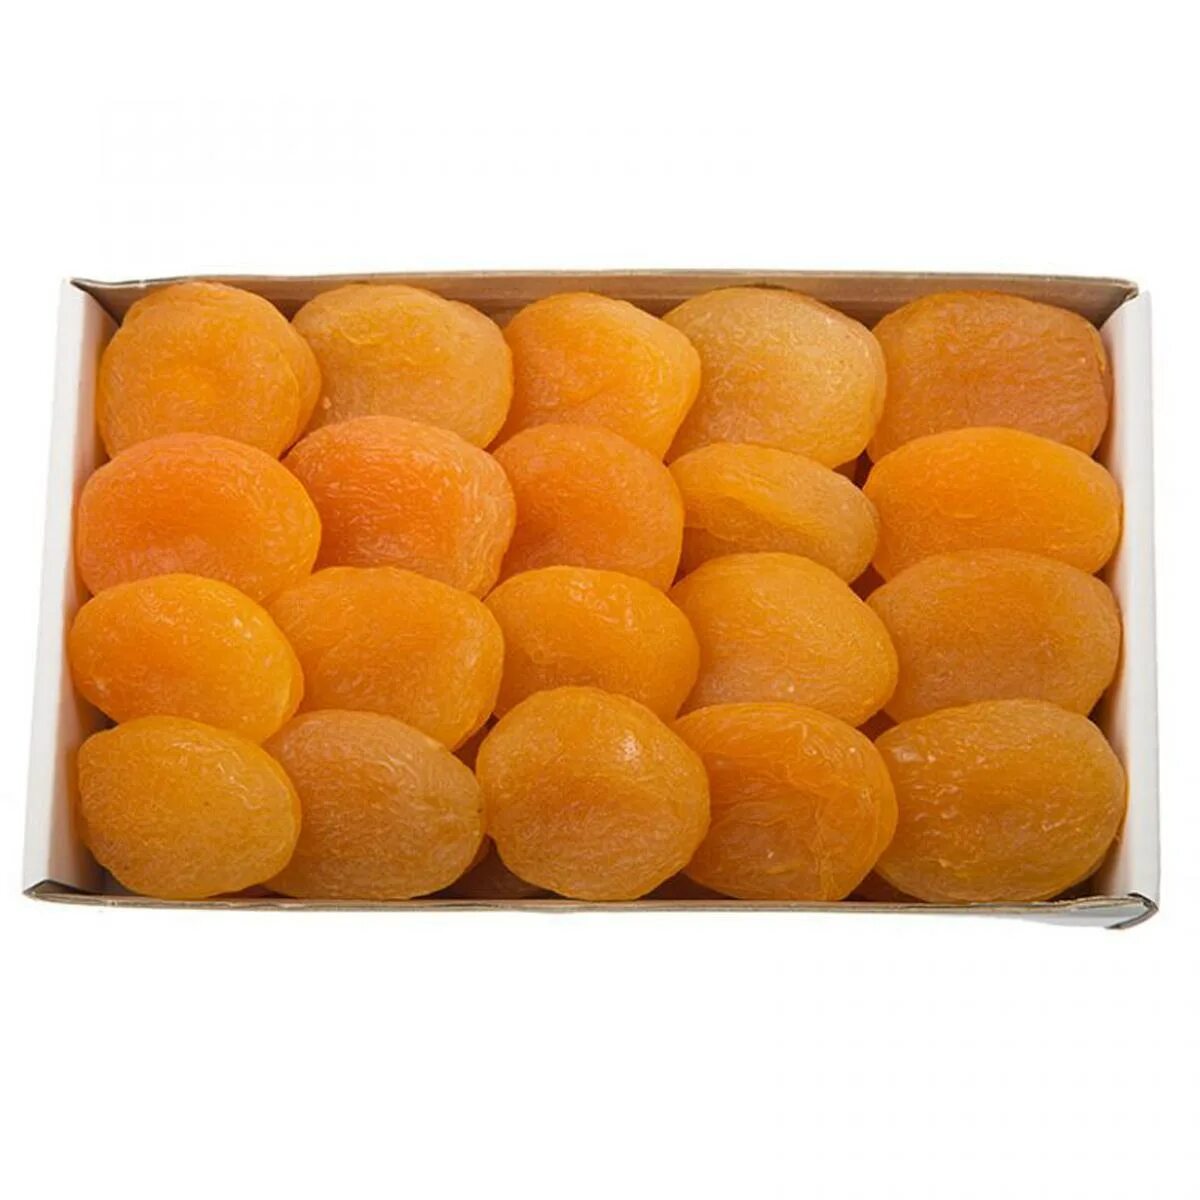 Dried Apricots Турция. Сушеный абрикос. Урюк сушеный. Турецкий абрикос.